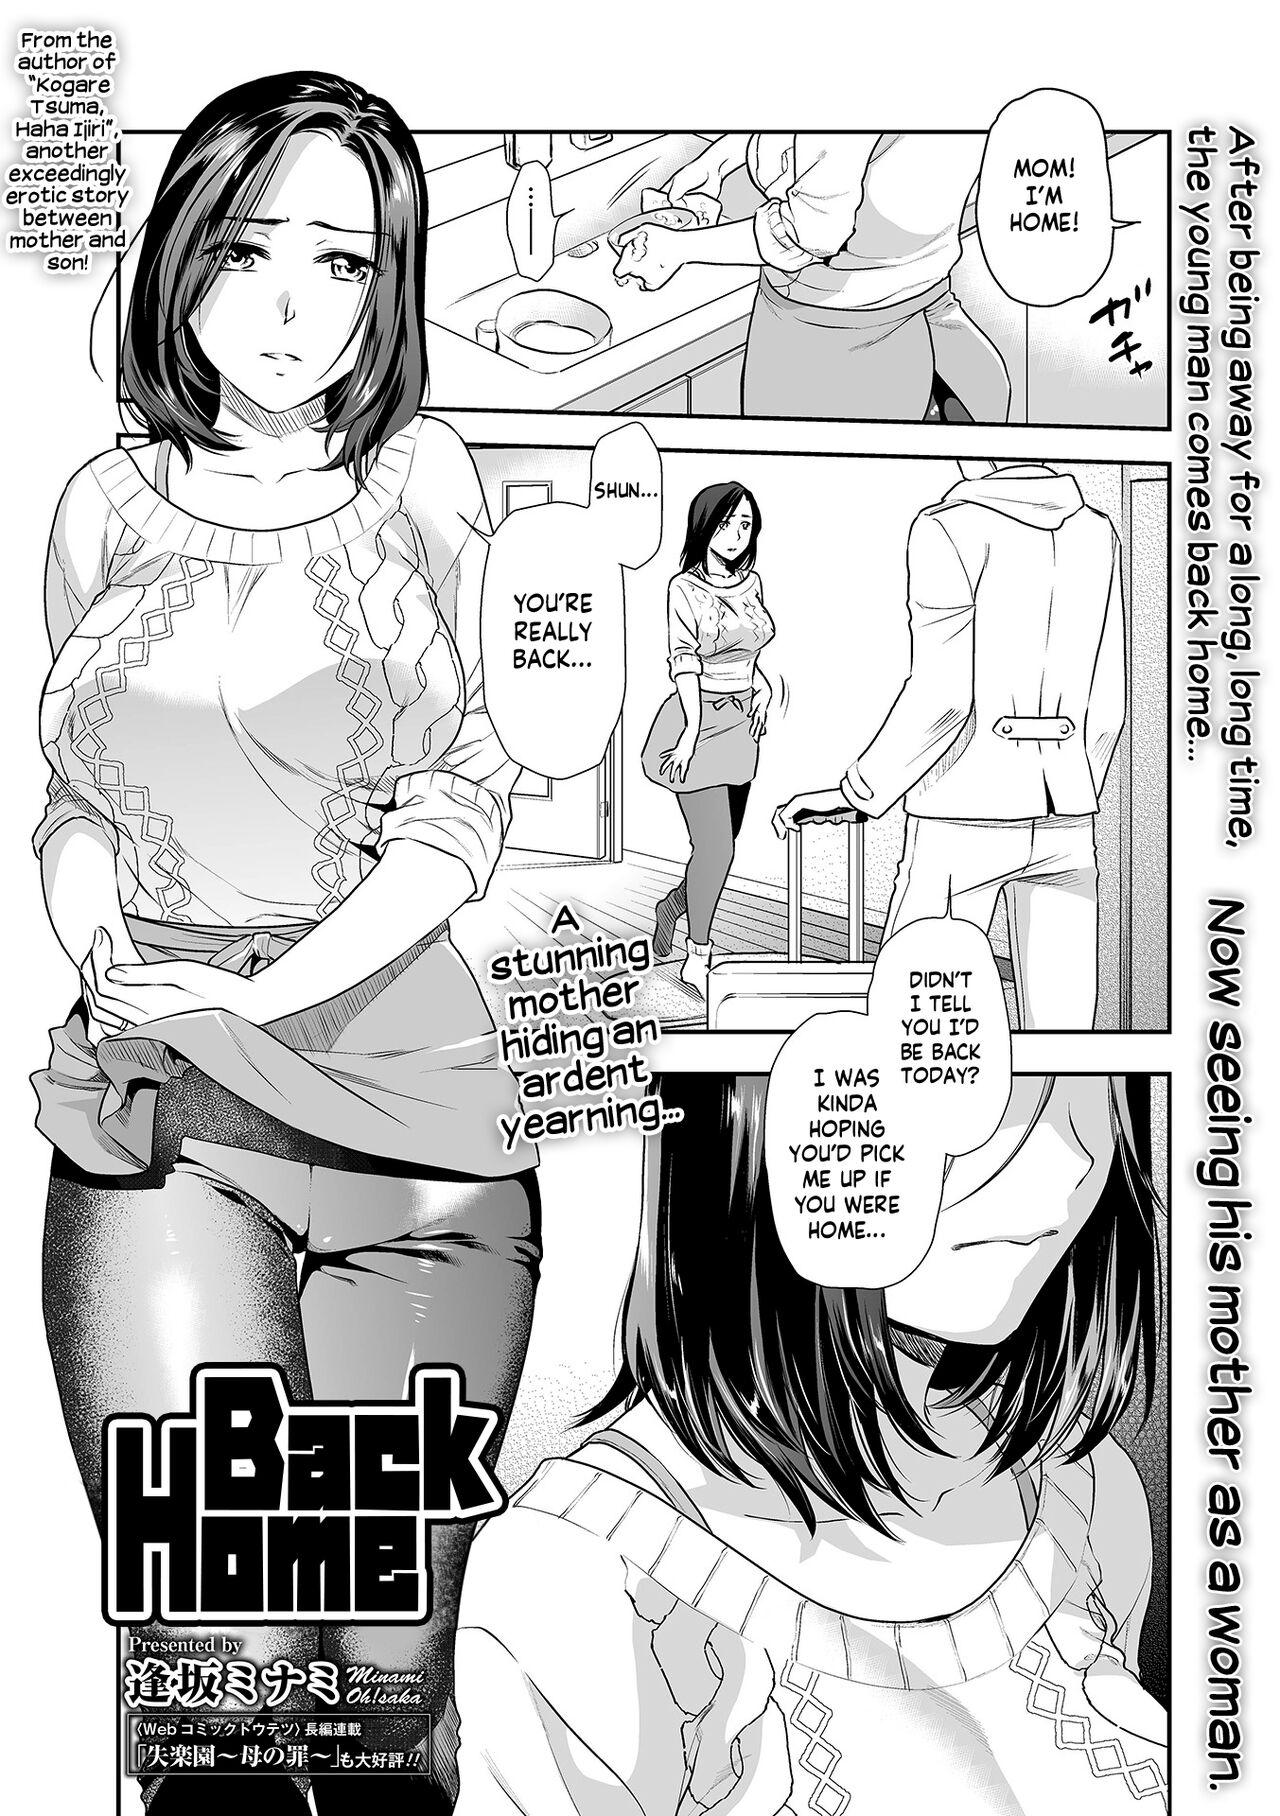 Clit Musuko, Kaeru - The Return | Back Home Nice Ass - Page 1